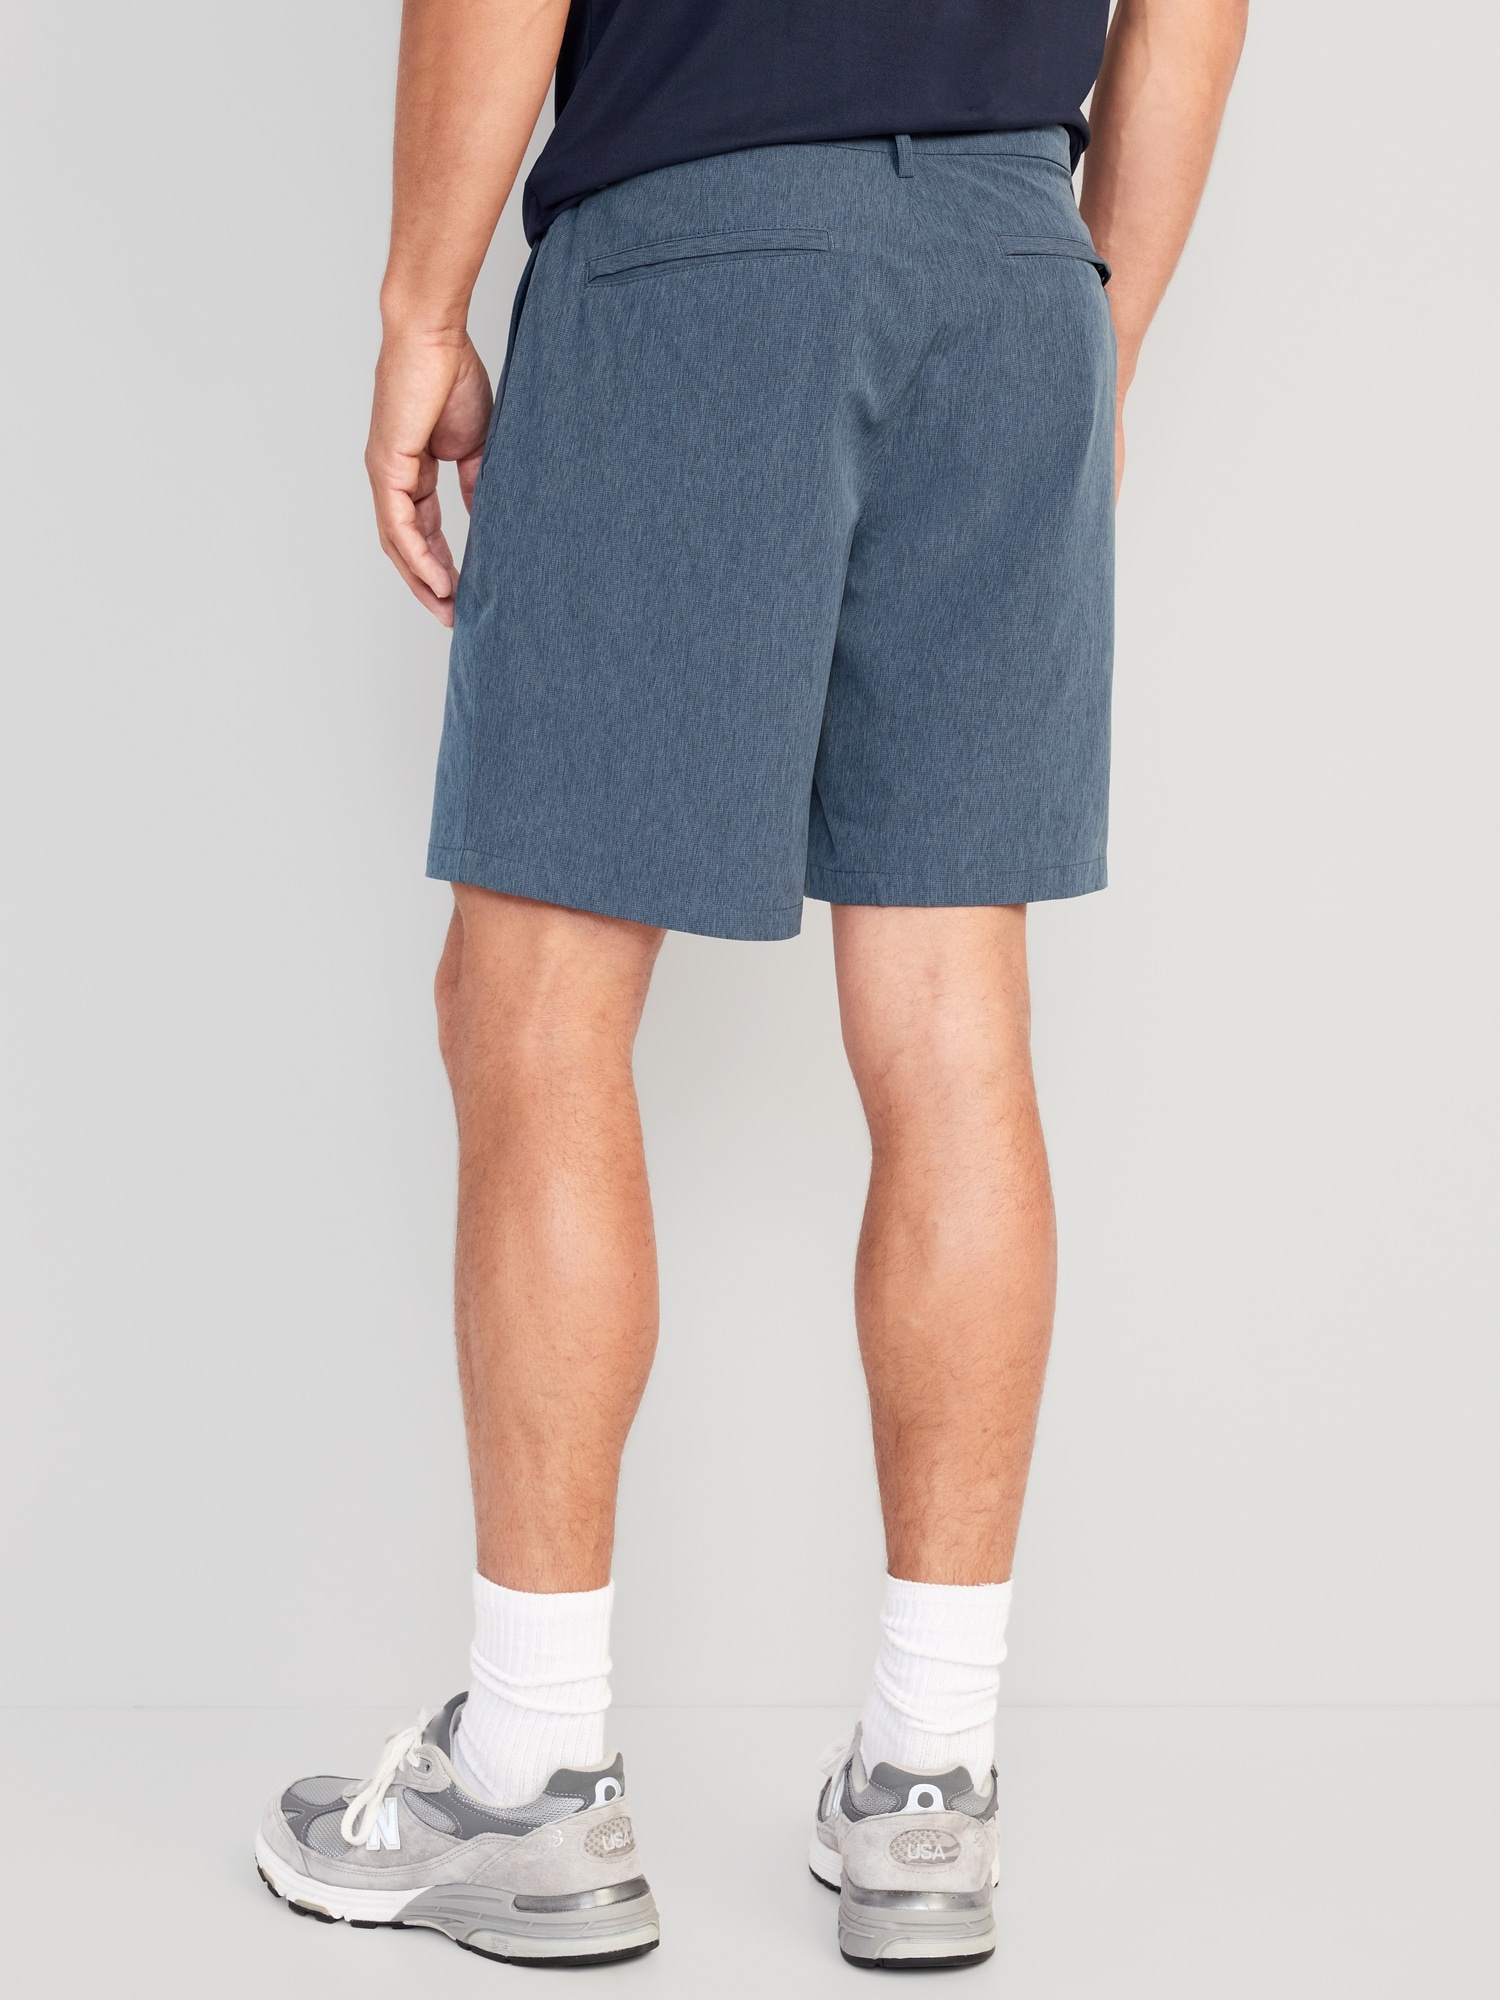 Men's 8 Inch Inseam Shorts